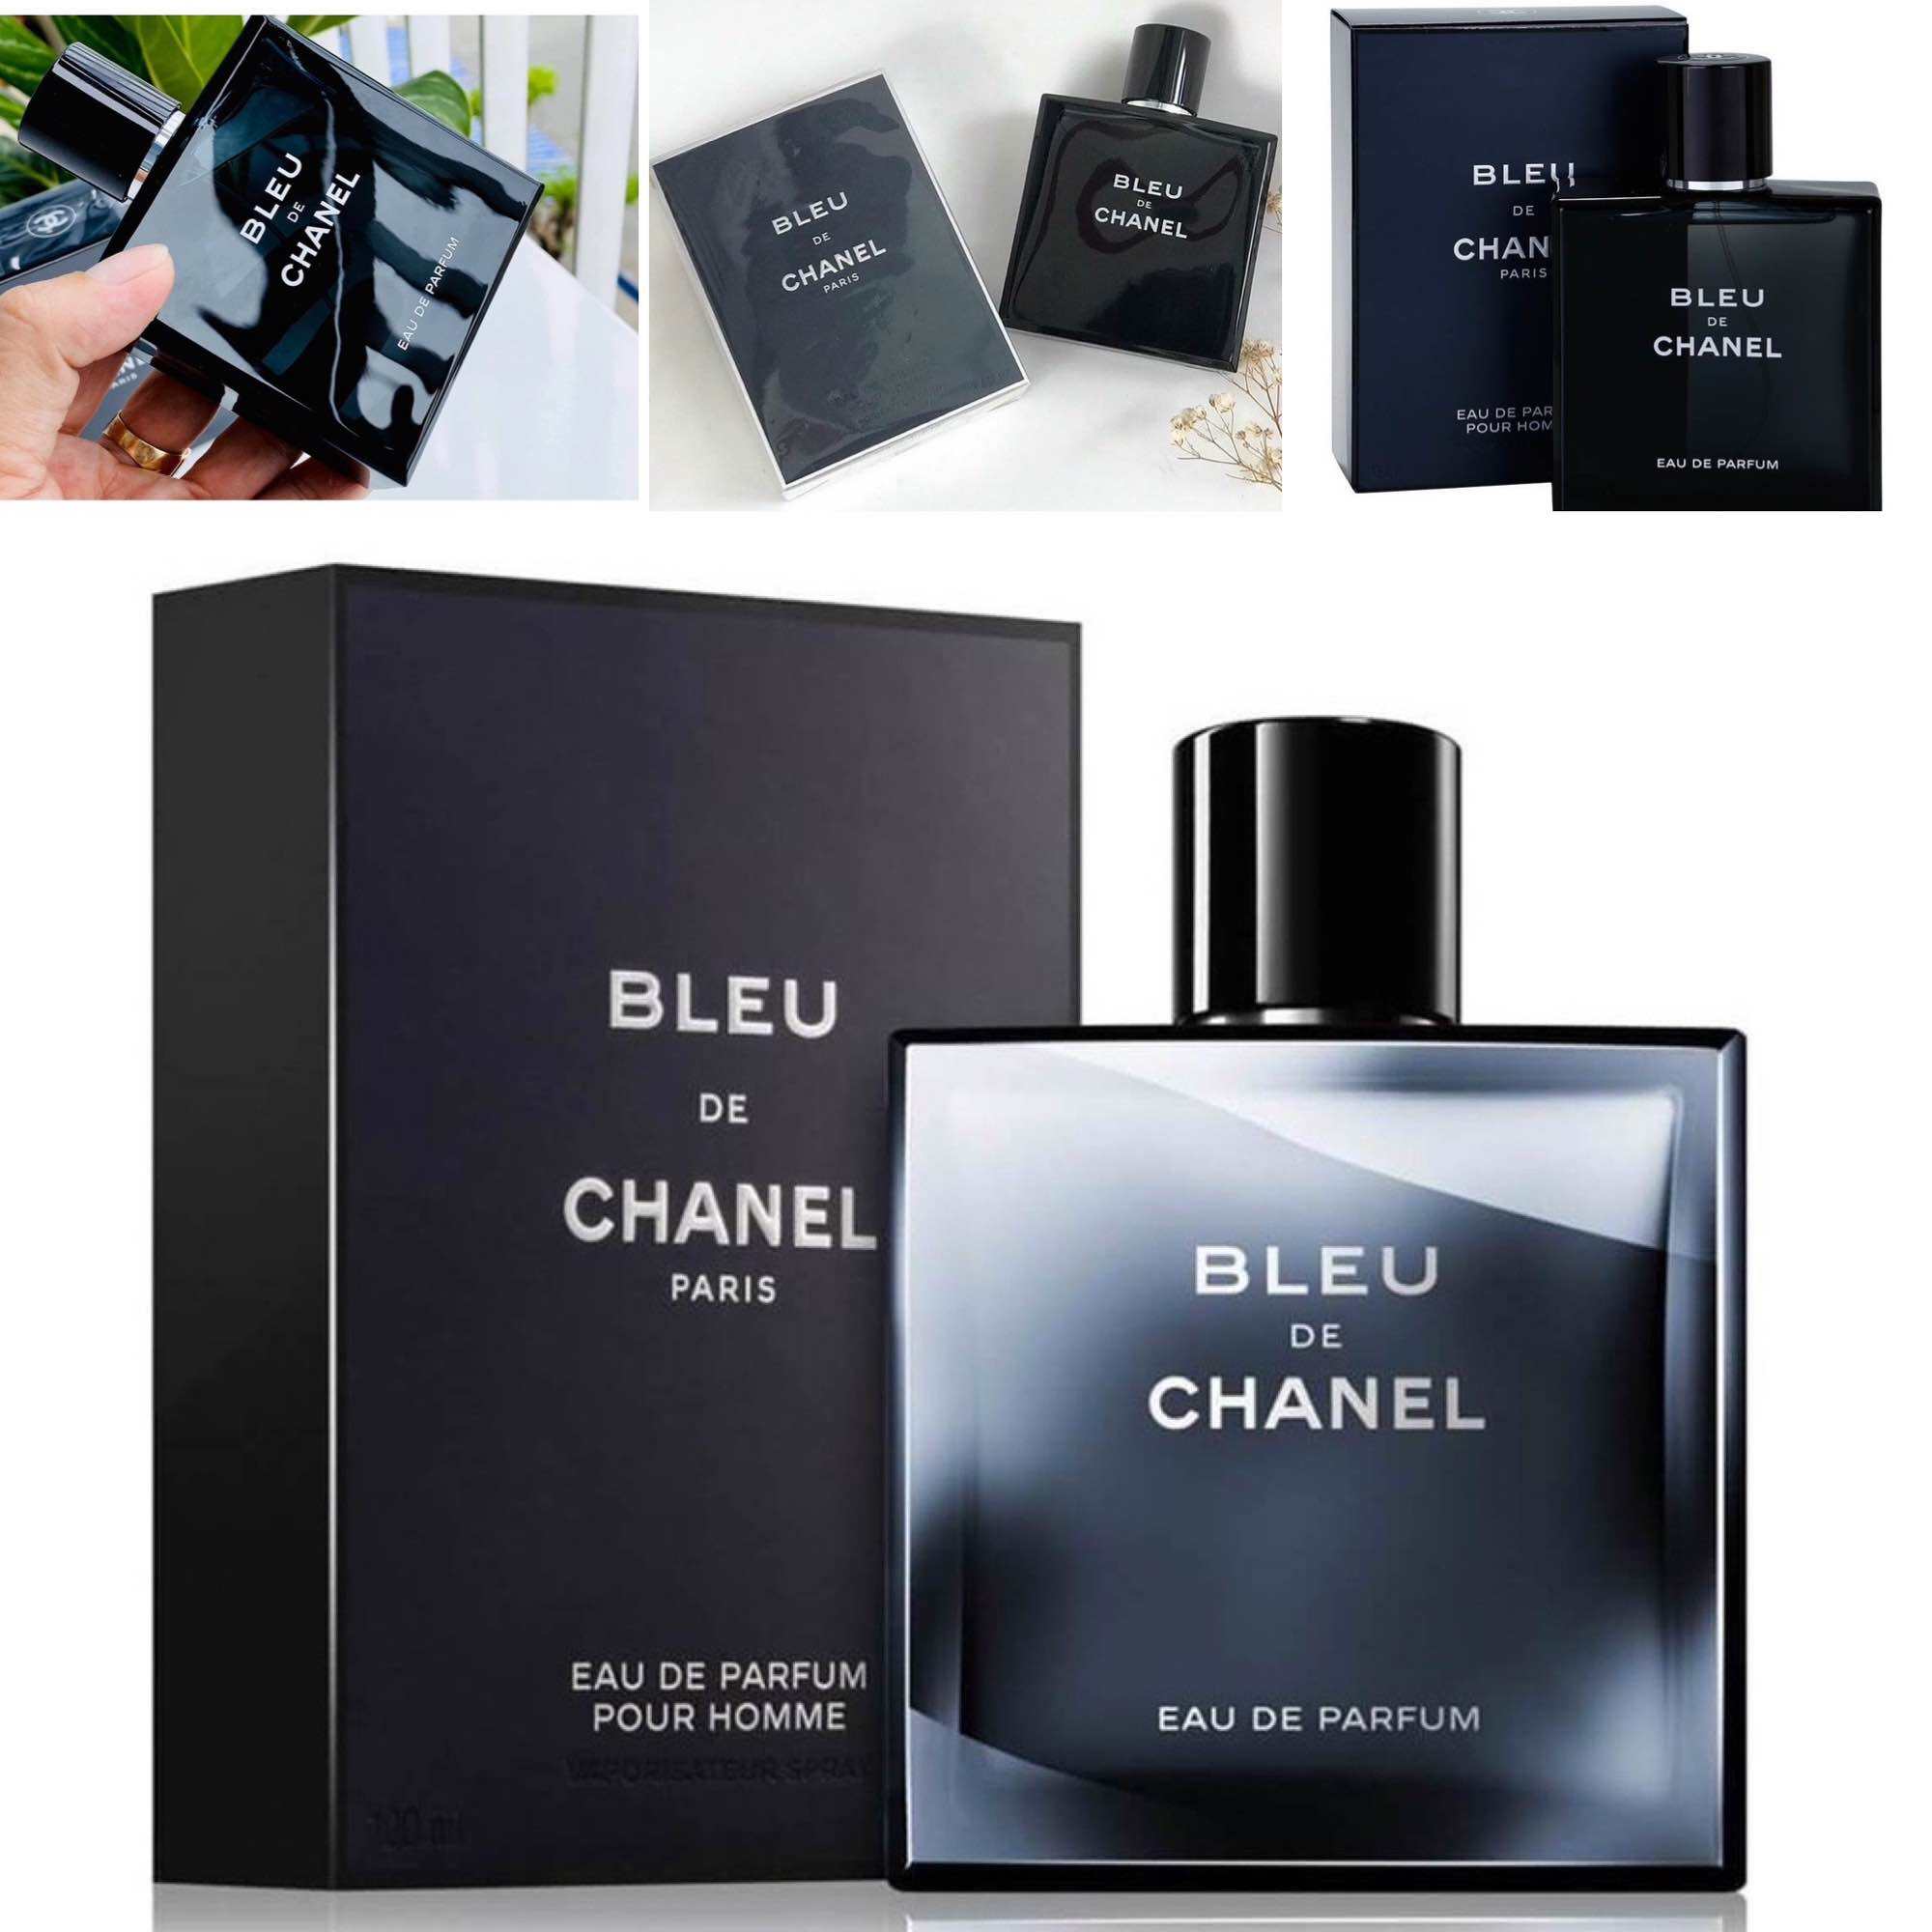 Nước hoa Chanel Bleu De Chanel Eau De Toilette giá tốt  Hadi Beauty